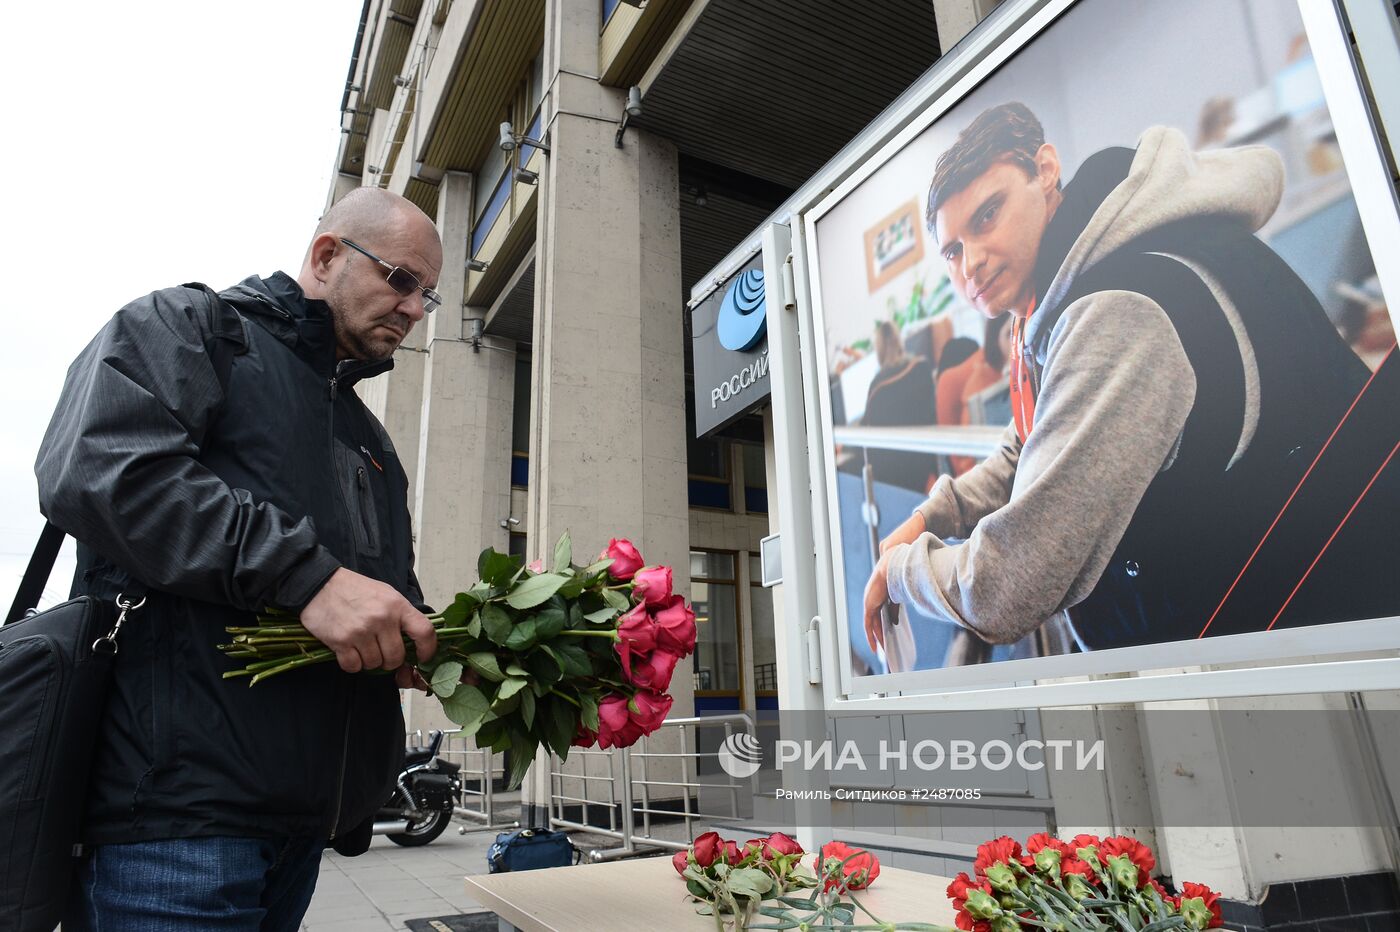 Андрей Стенин погиб на юго-востоке Украины